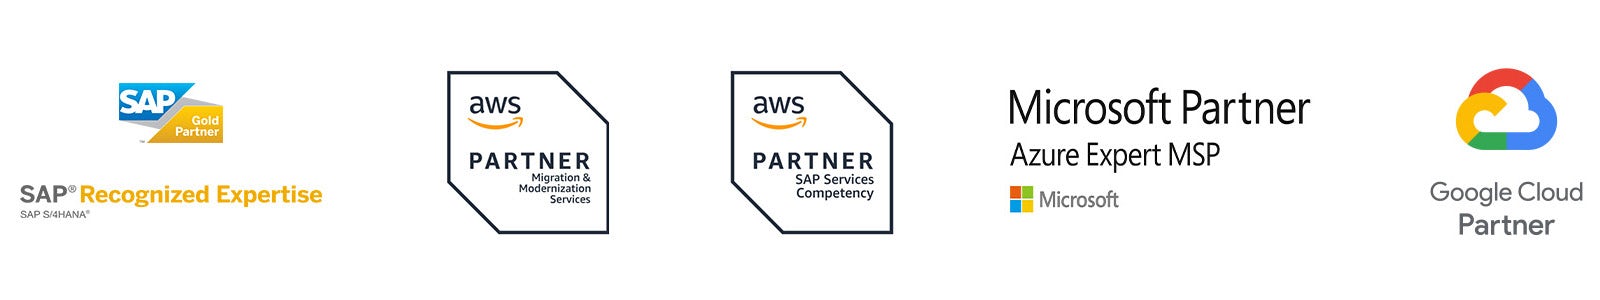 sap-services-partner-logos-2